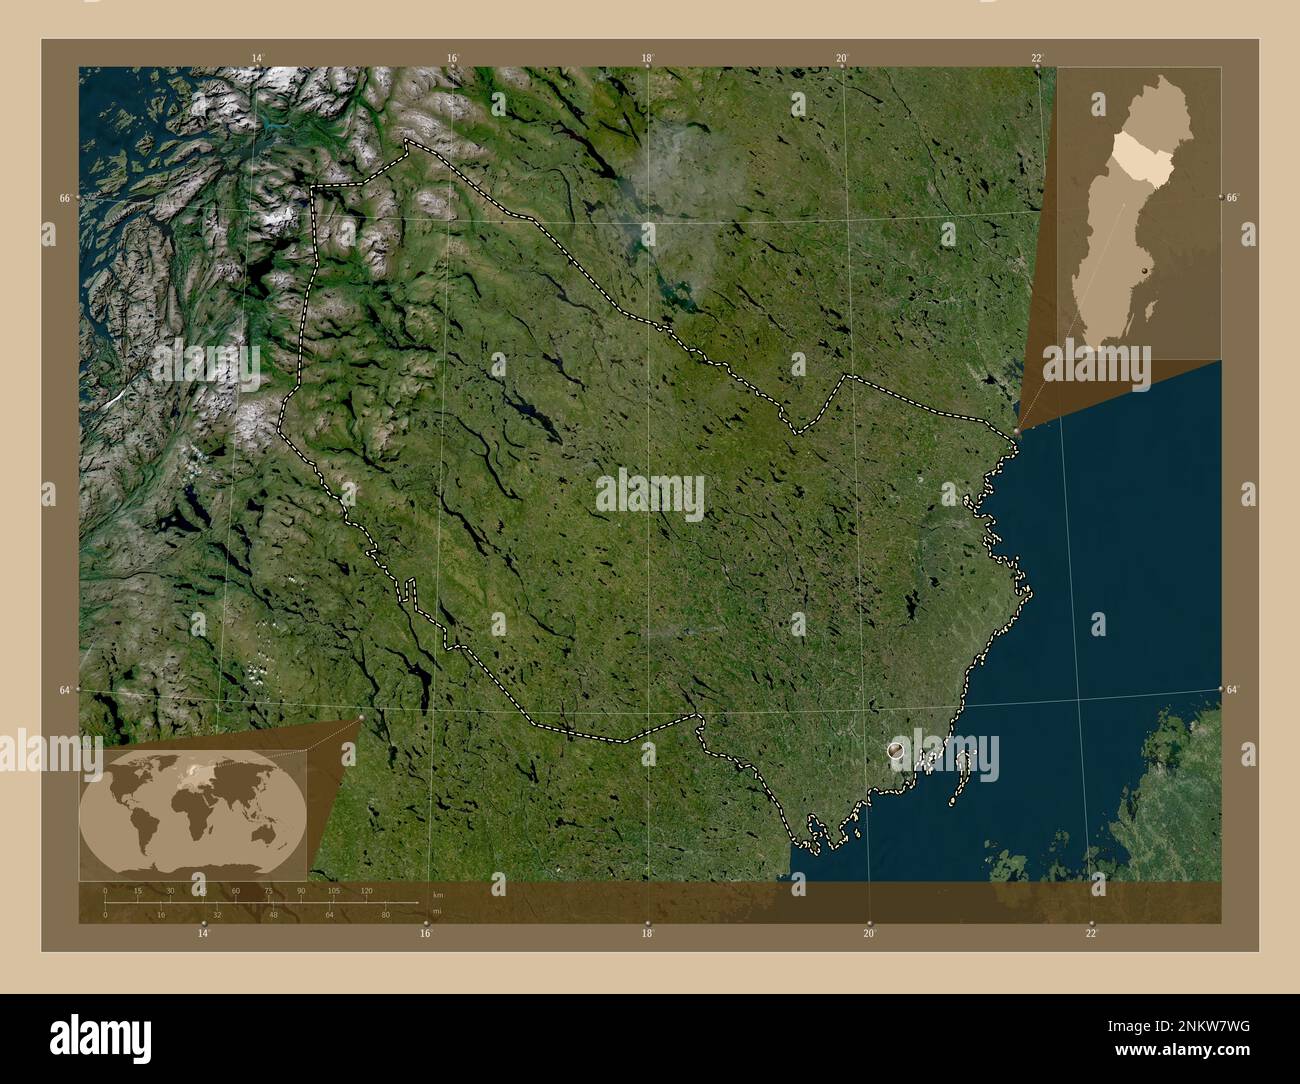 Vasterbotten, schwedischer Bezirk. Satellitenkarte mit niedriger Auflösung. Eckkarten für zusätzliche Standorte Stockfoto